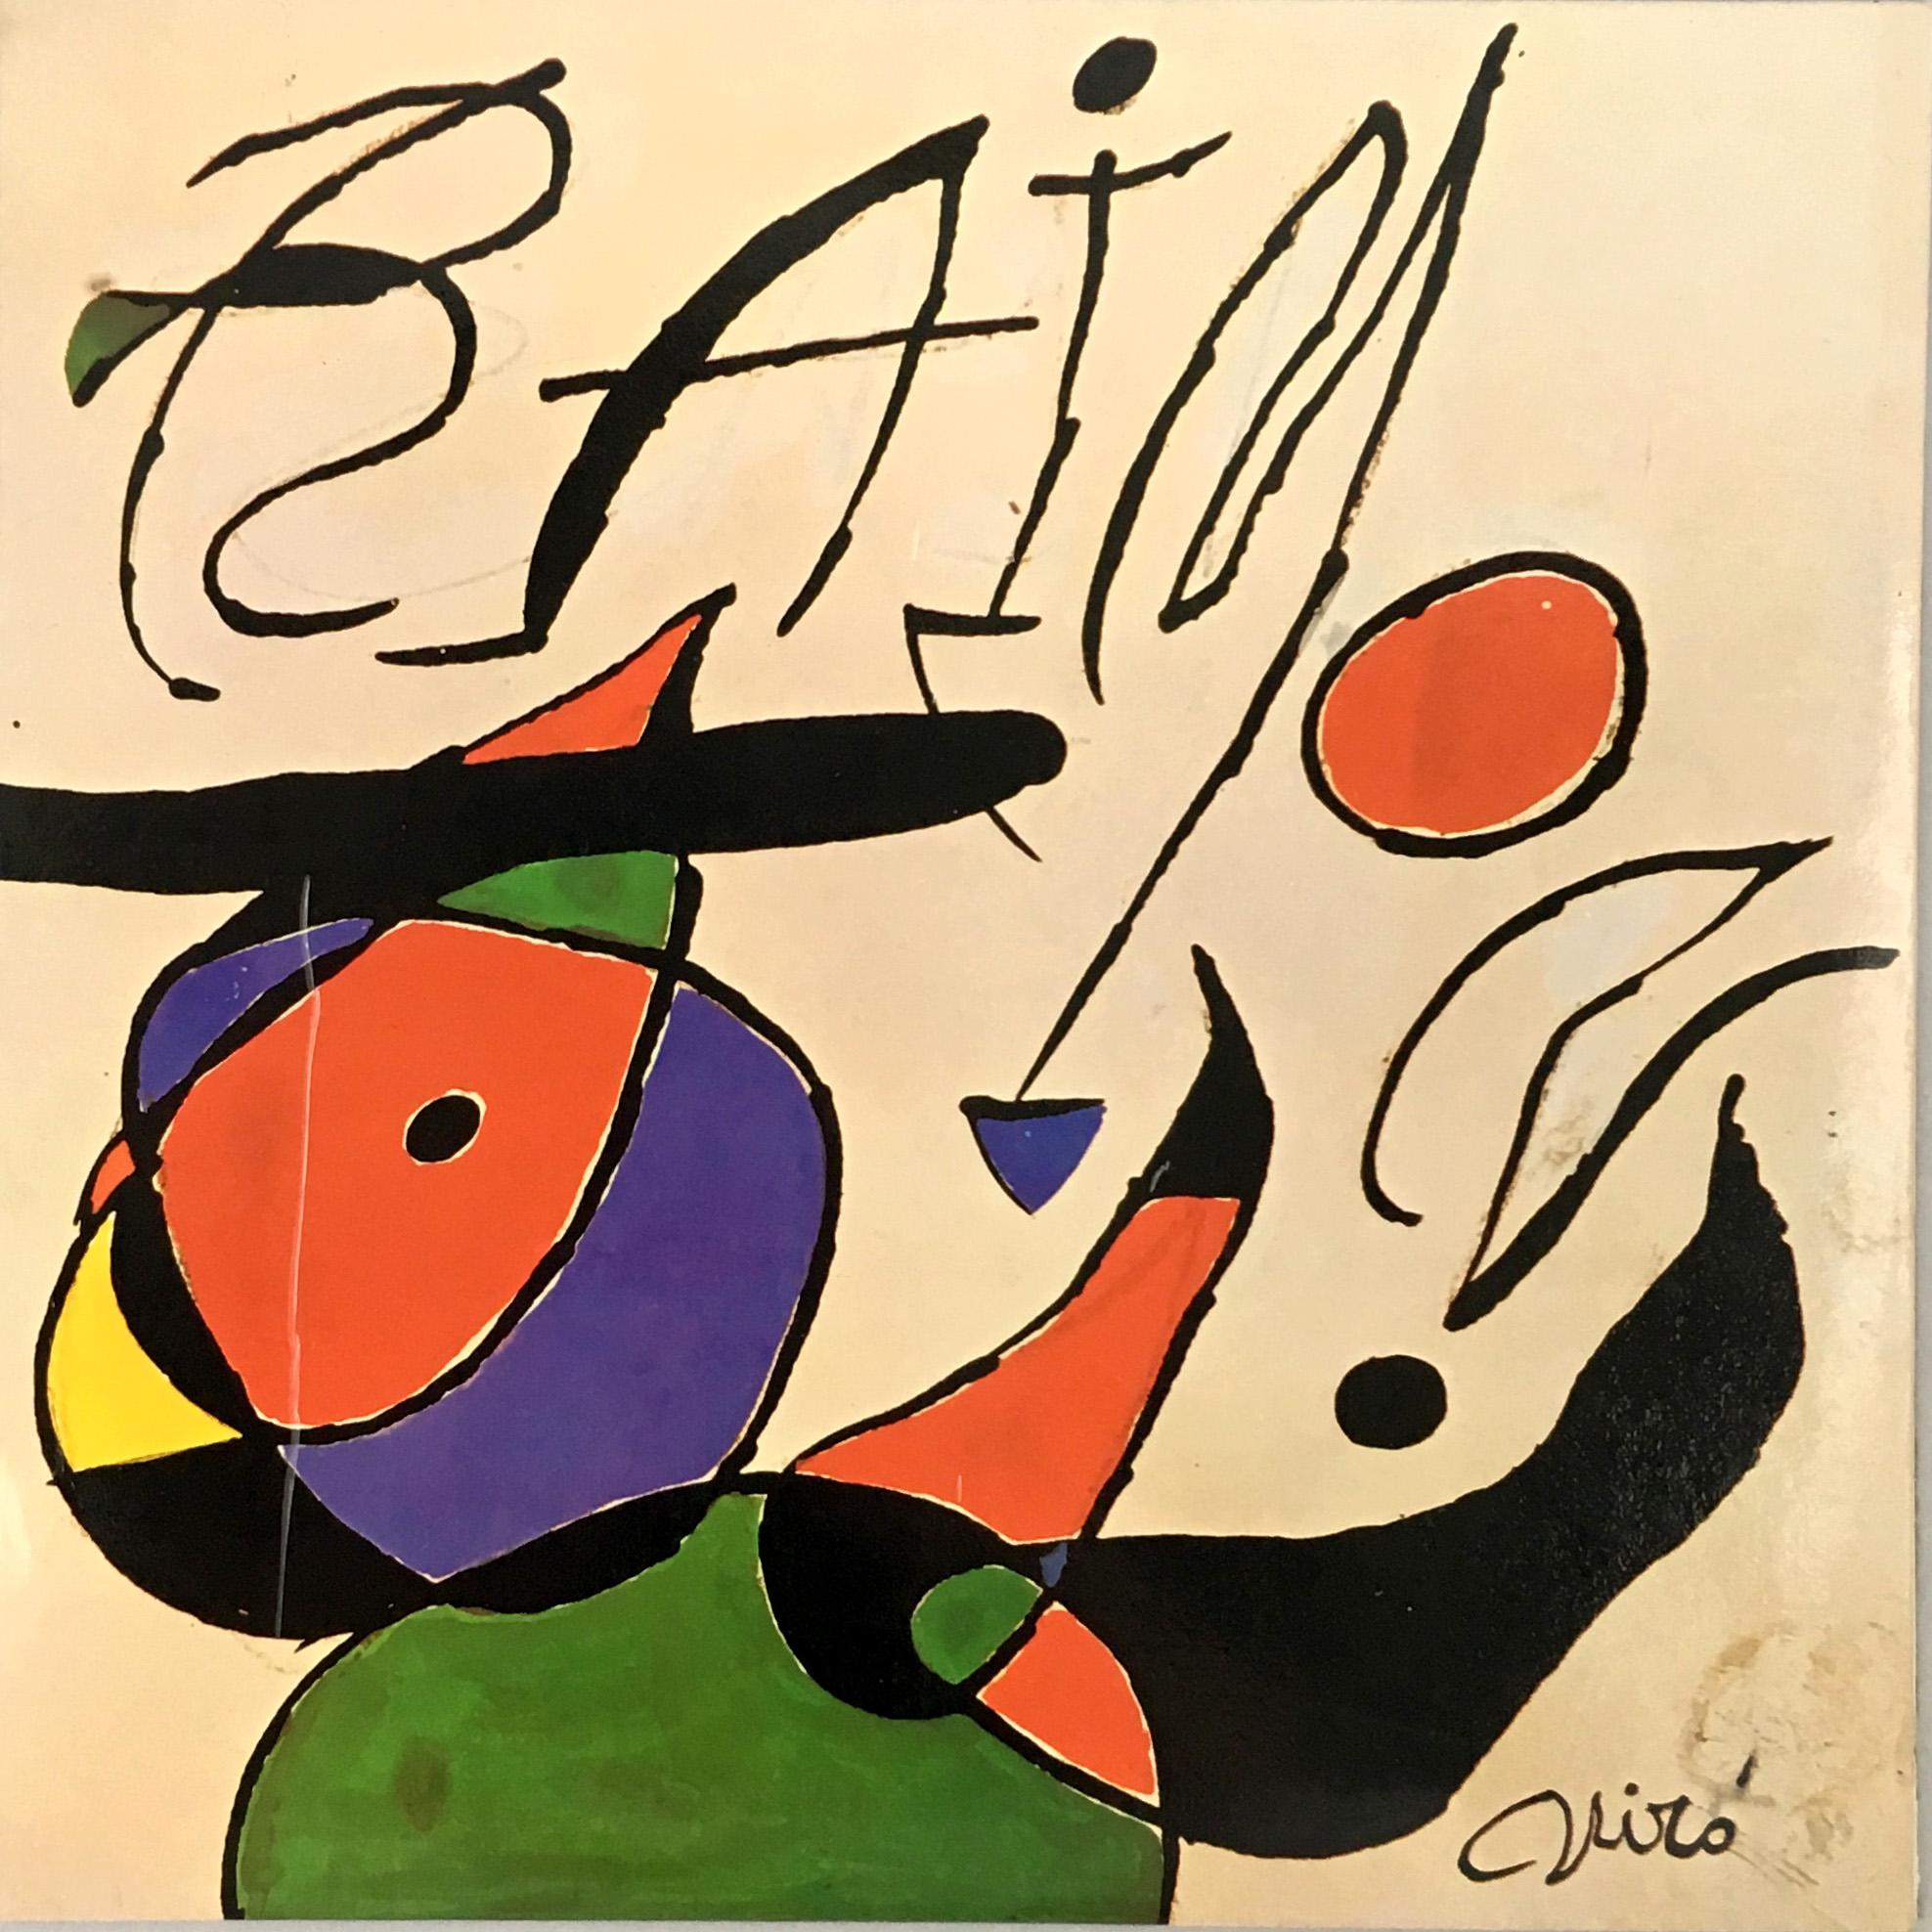 About
Joan Miró vinyl album art, 1979
Quan L’aigua Es Queixa, Raimon

Raimon and Joan Miró were close friends that first collaborated on the 1966 album Cançons de la roda del temps. In 1979, Miró designed a cover for the album Quan la aigua queixa,